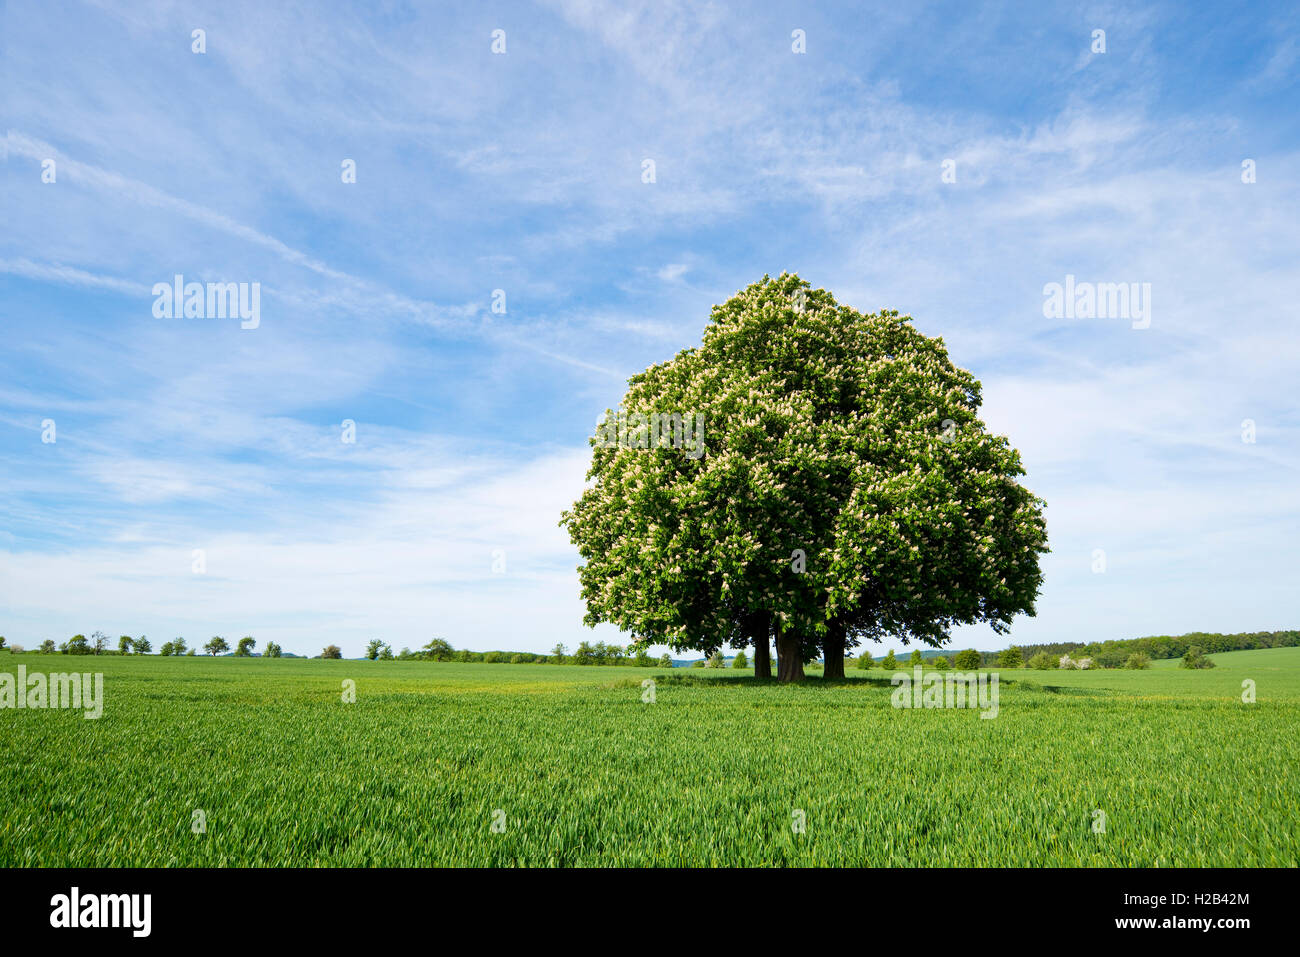 Rosskastanie oder conker Baum (Aesculus hippocastanum) Blühende, Gruppe von Bäumen im Feld Struktur, Thüringen, Deutschland Stockfoto